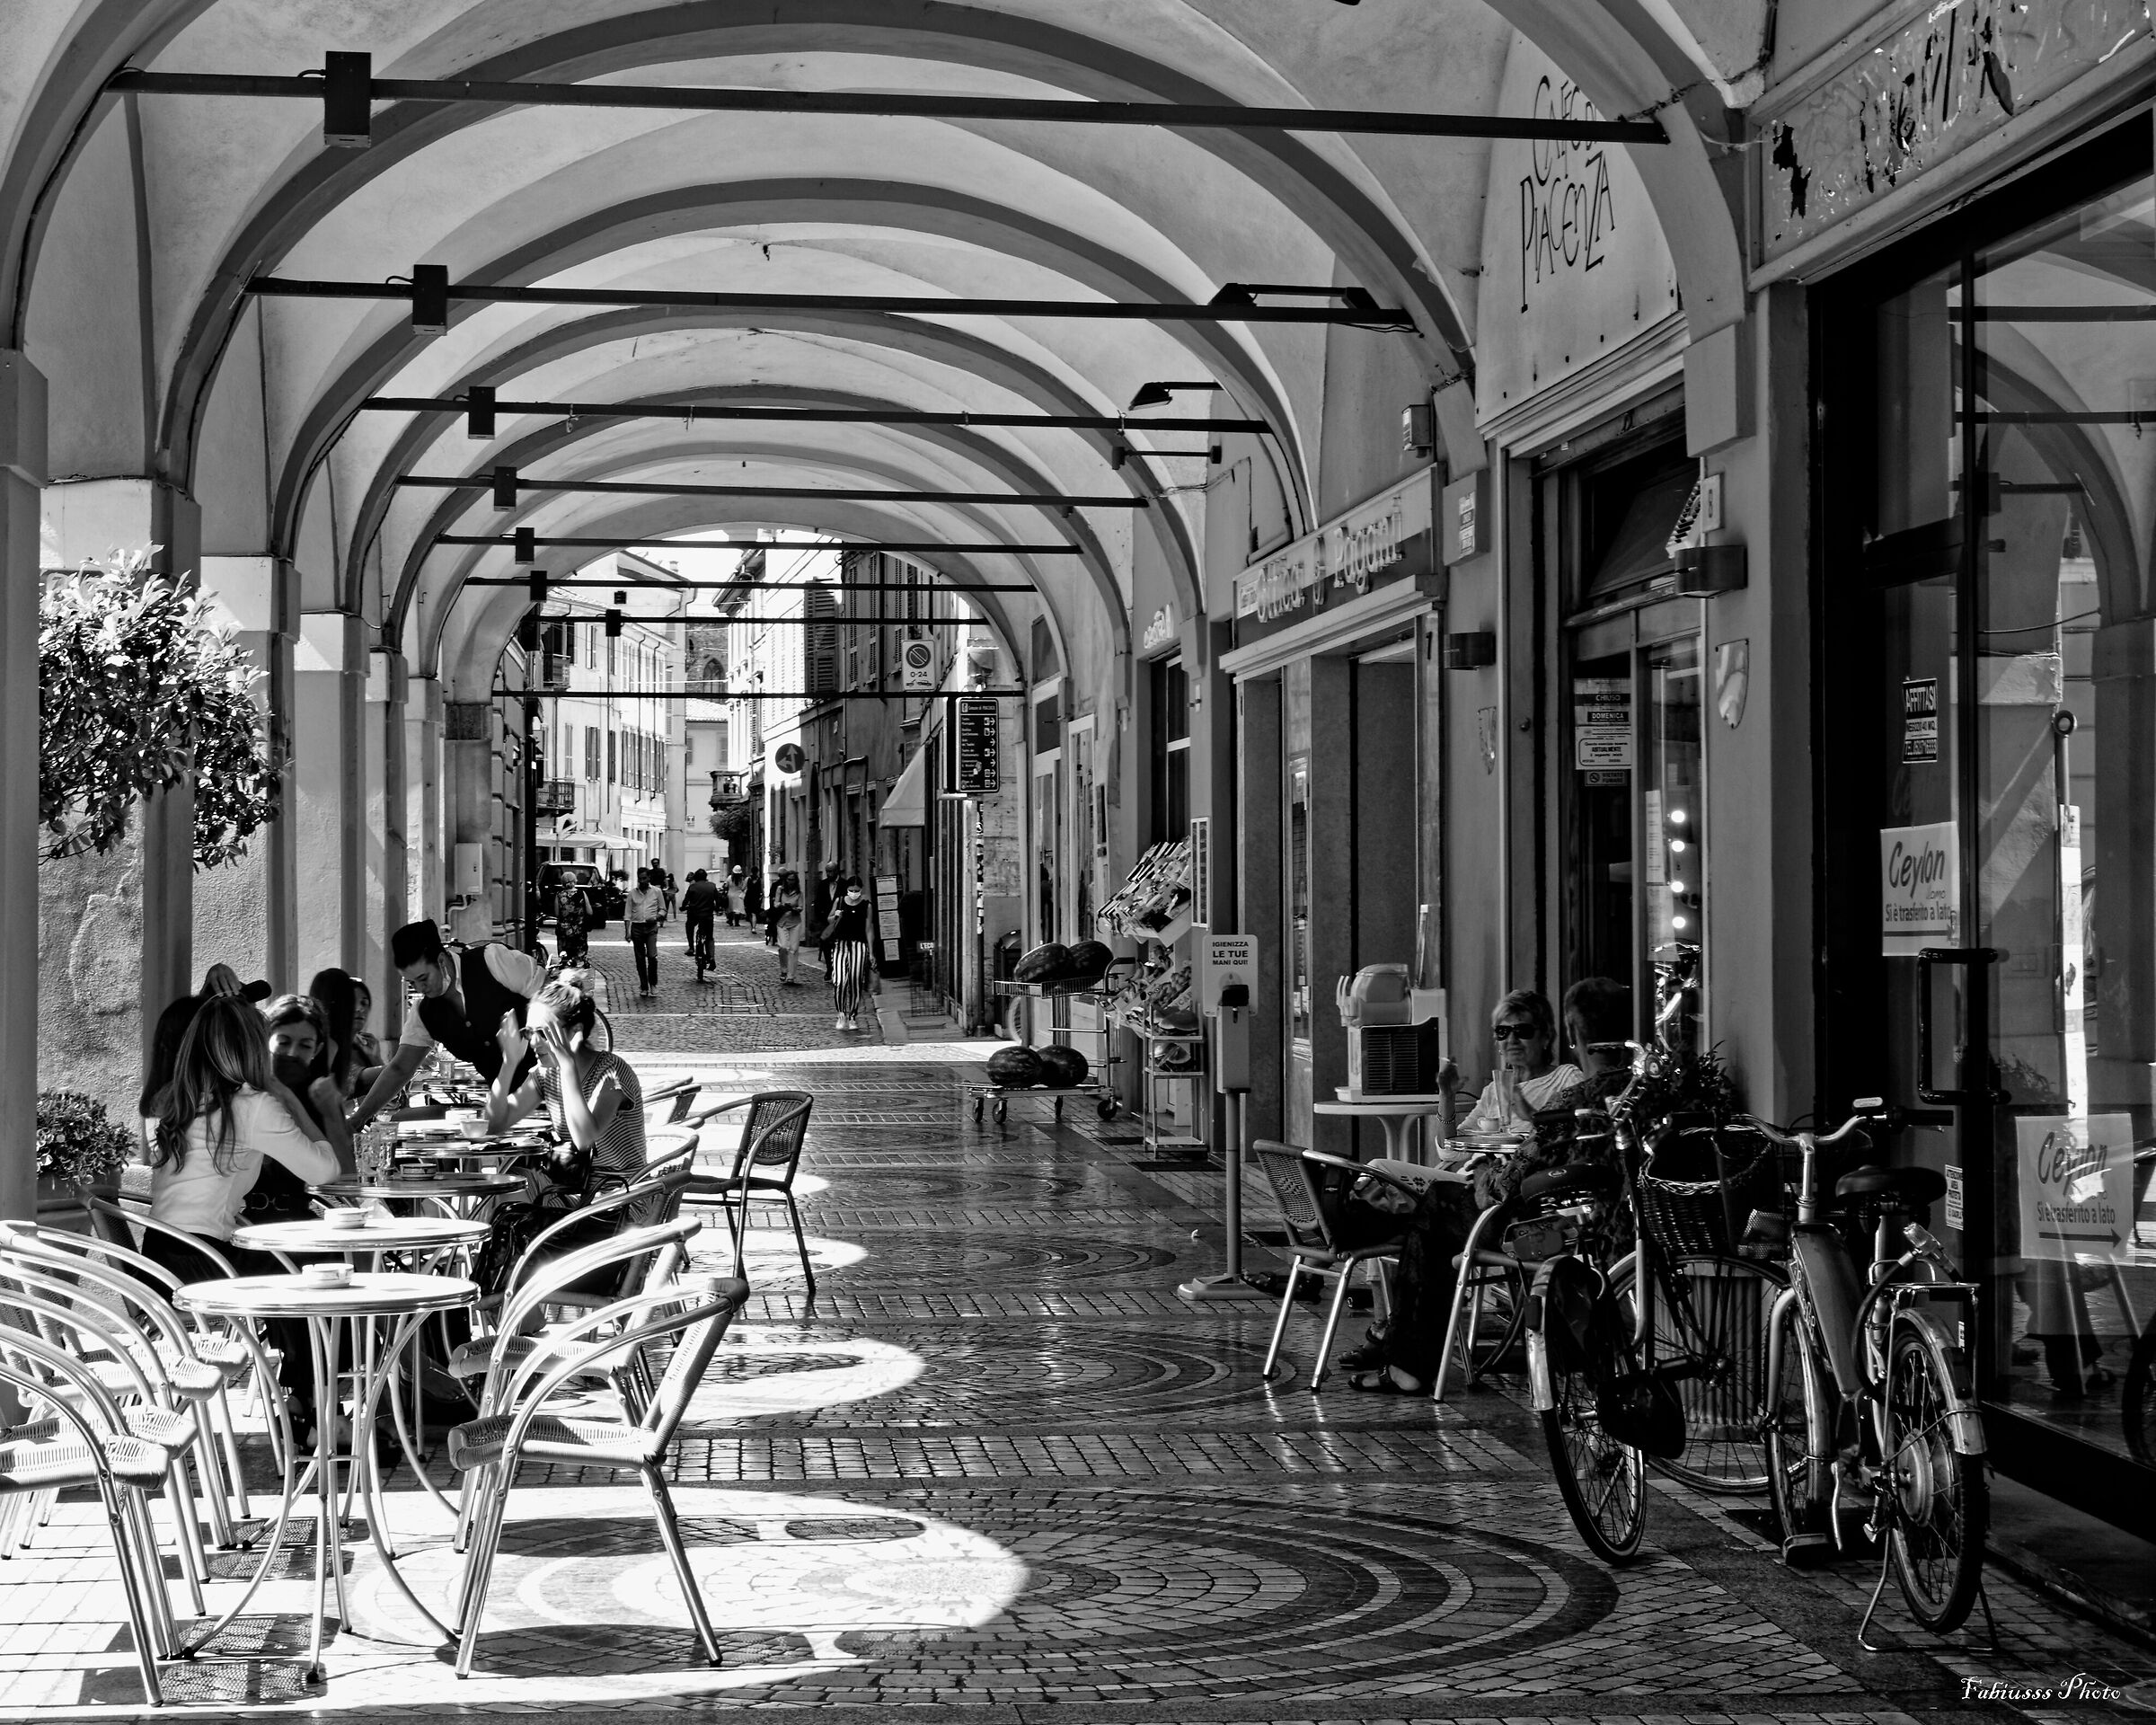 Cremona - The arcades...